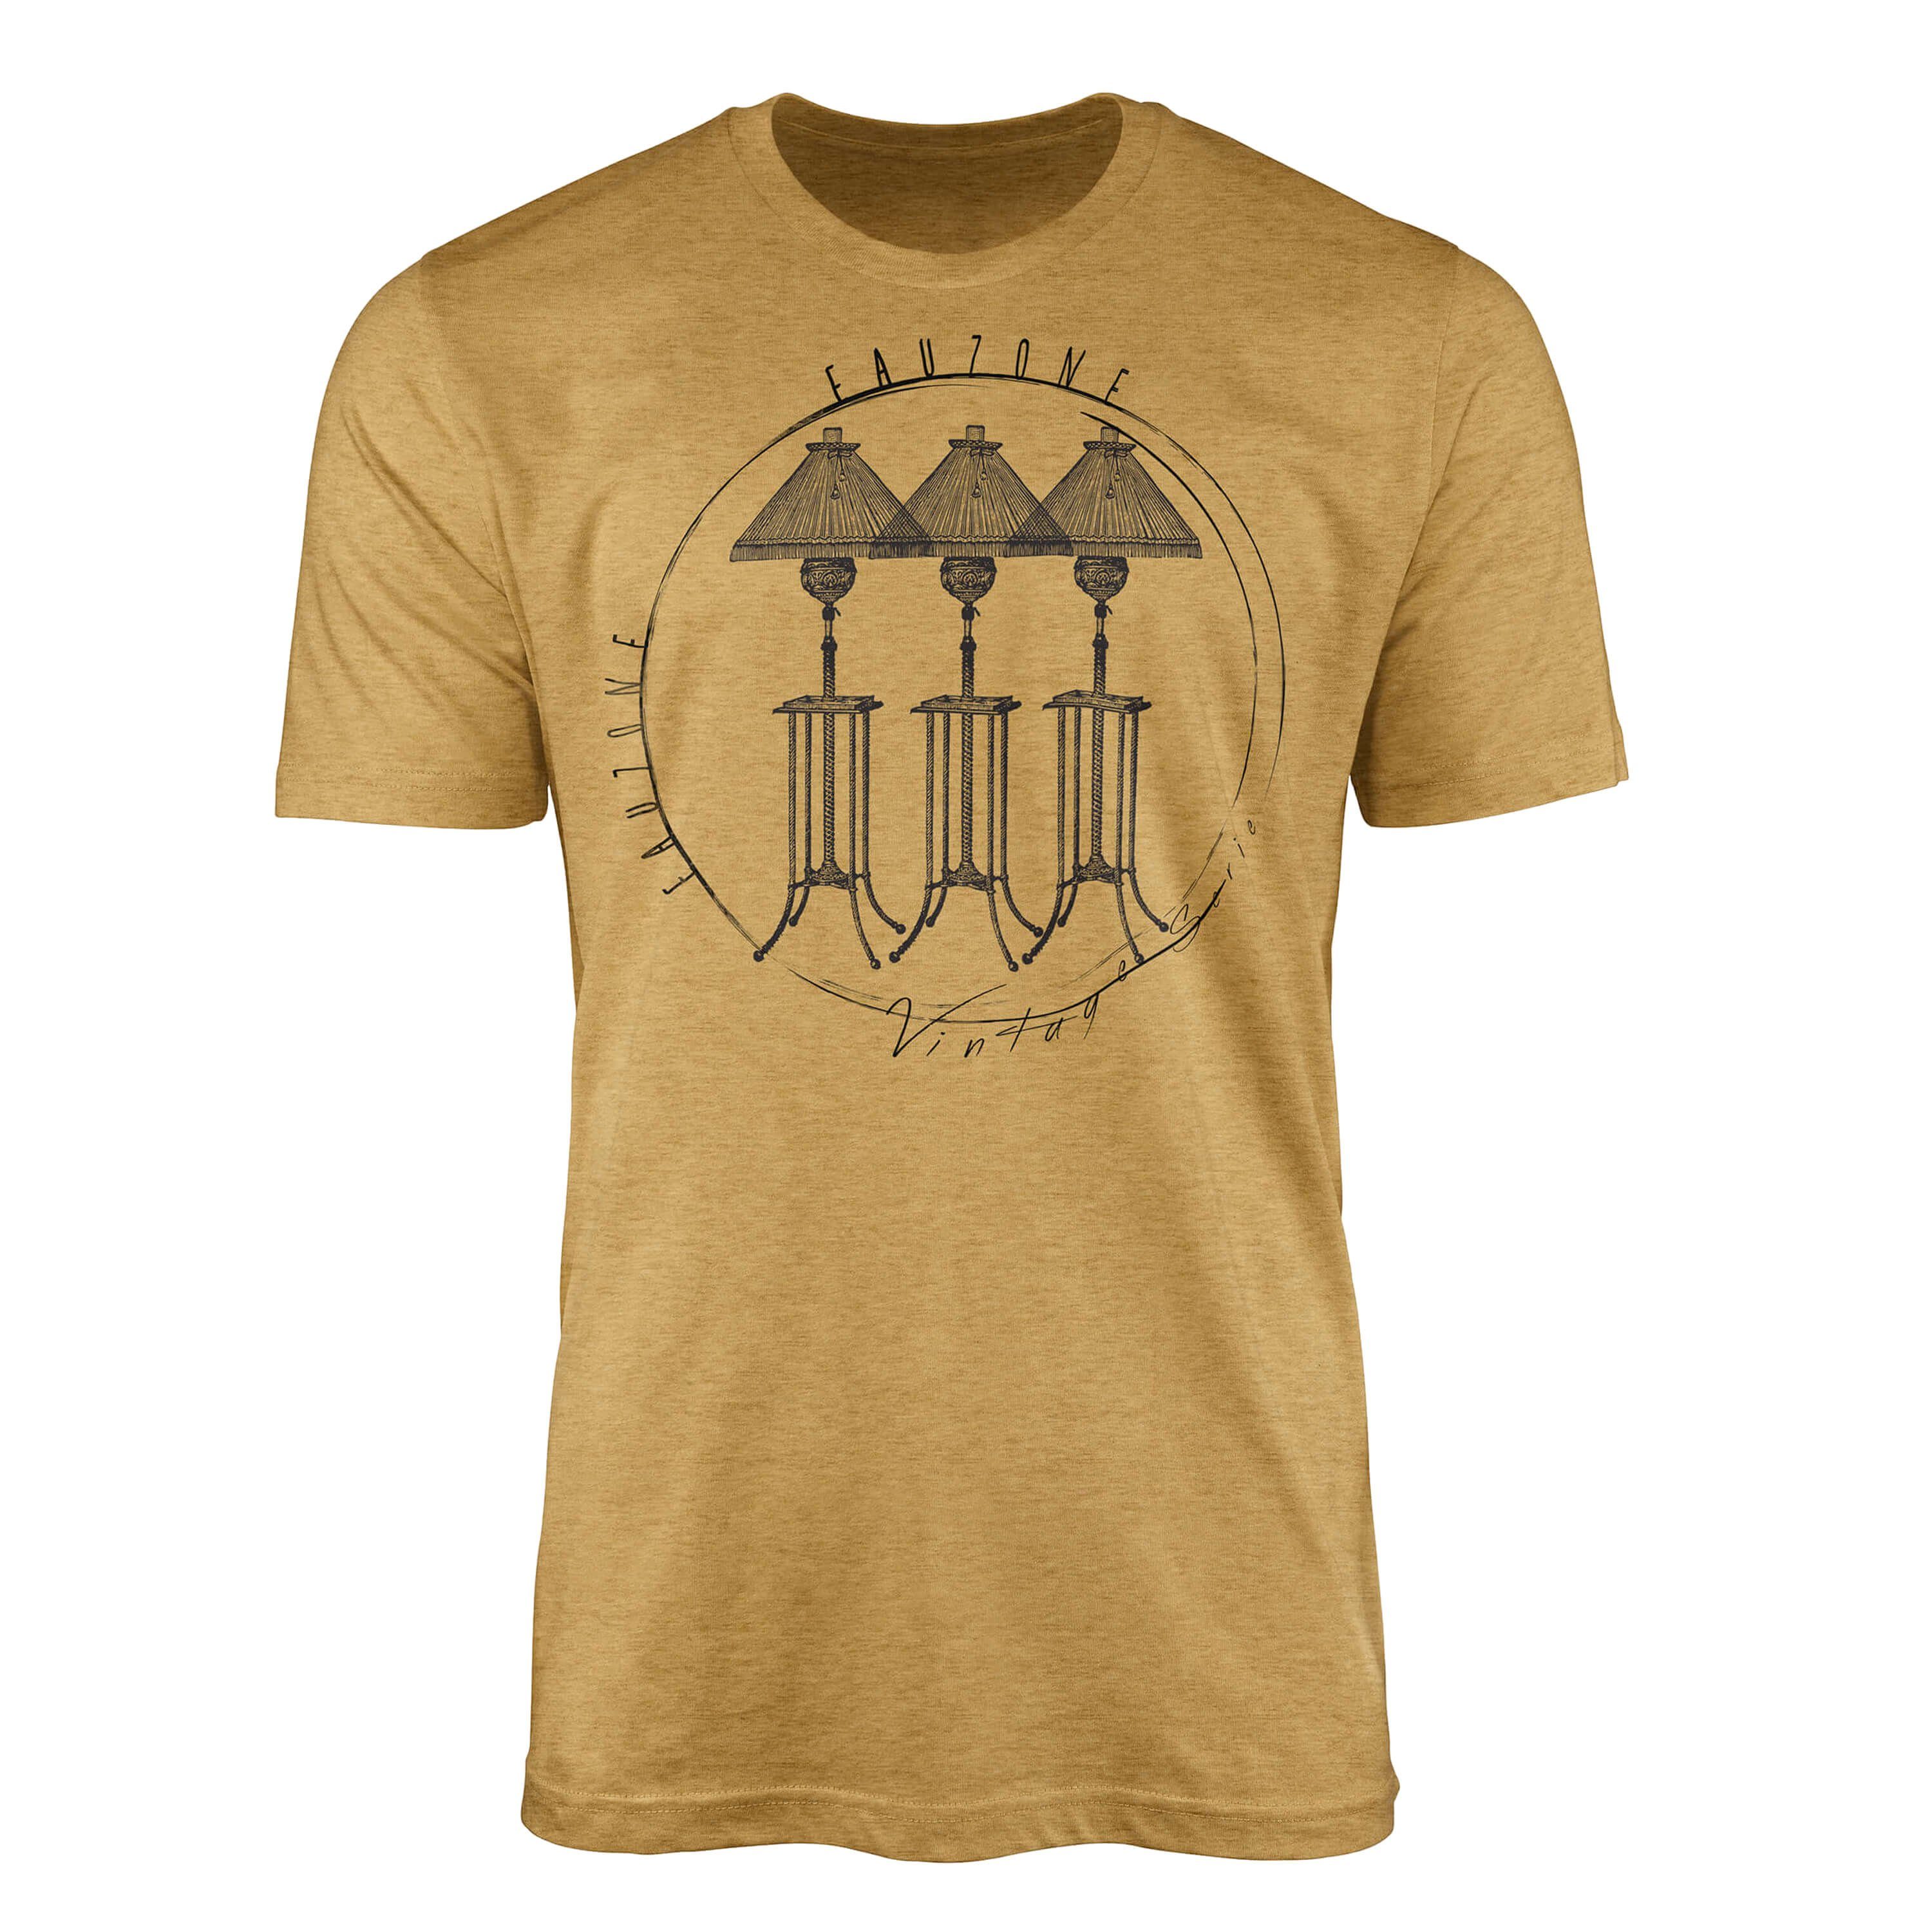 T-Shirt Sinus Gold Vintage T-Shirt Stehlampen Antique Herren Art